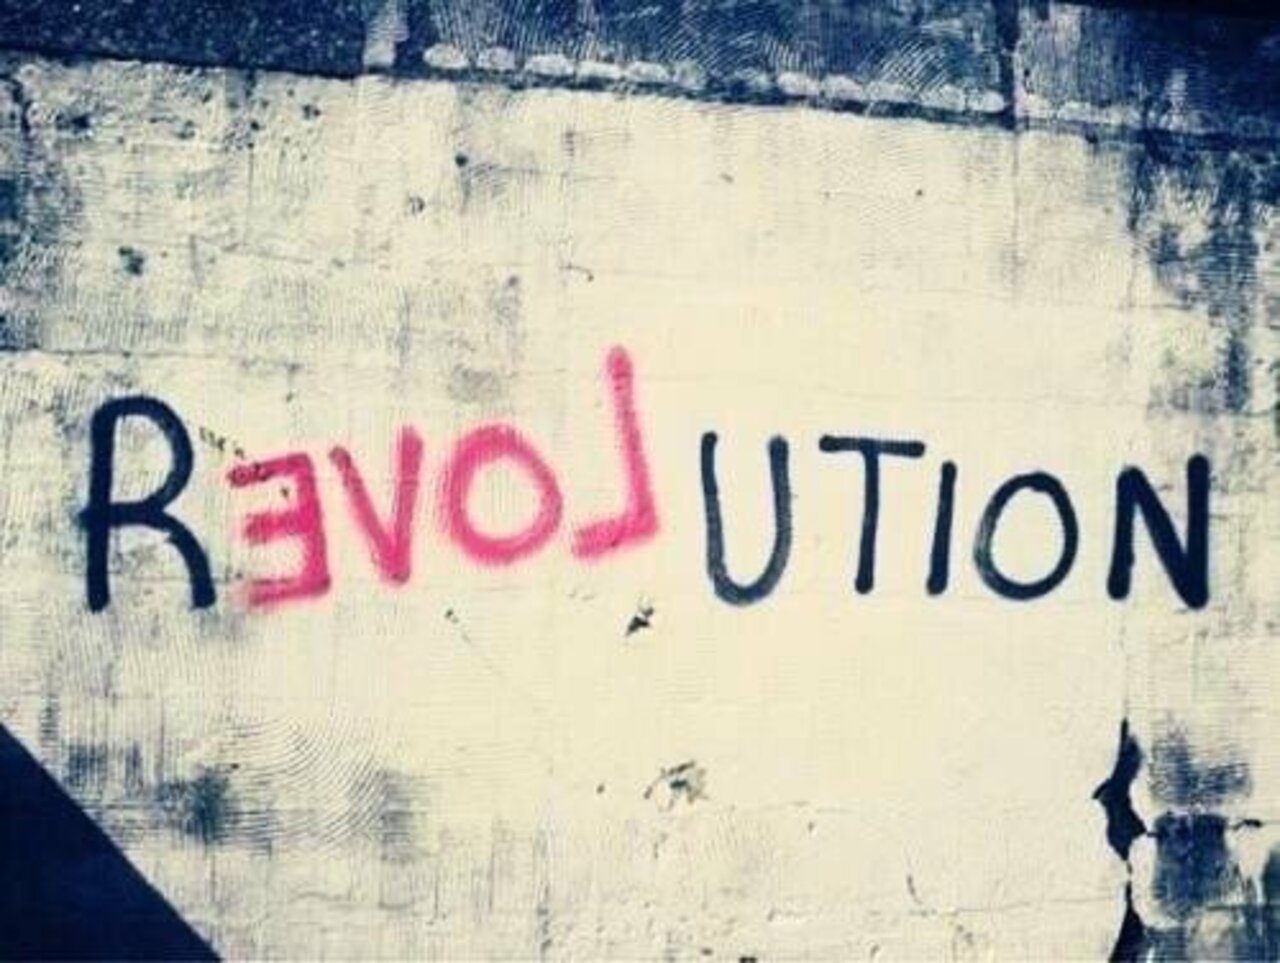 #Love Revolution – #Creative #StreetArt – Be ▲rtist – Be ▲rt Magazine https://beartistbeart.com/2016/12/02/love-revolution-creative-streetart/?utm_campaign=crowdfire&utm_content=crowdfire&utm_medium=social&utm_source=twitter https://t.co/a9UCM2Iq61